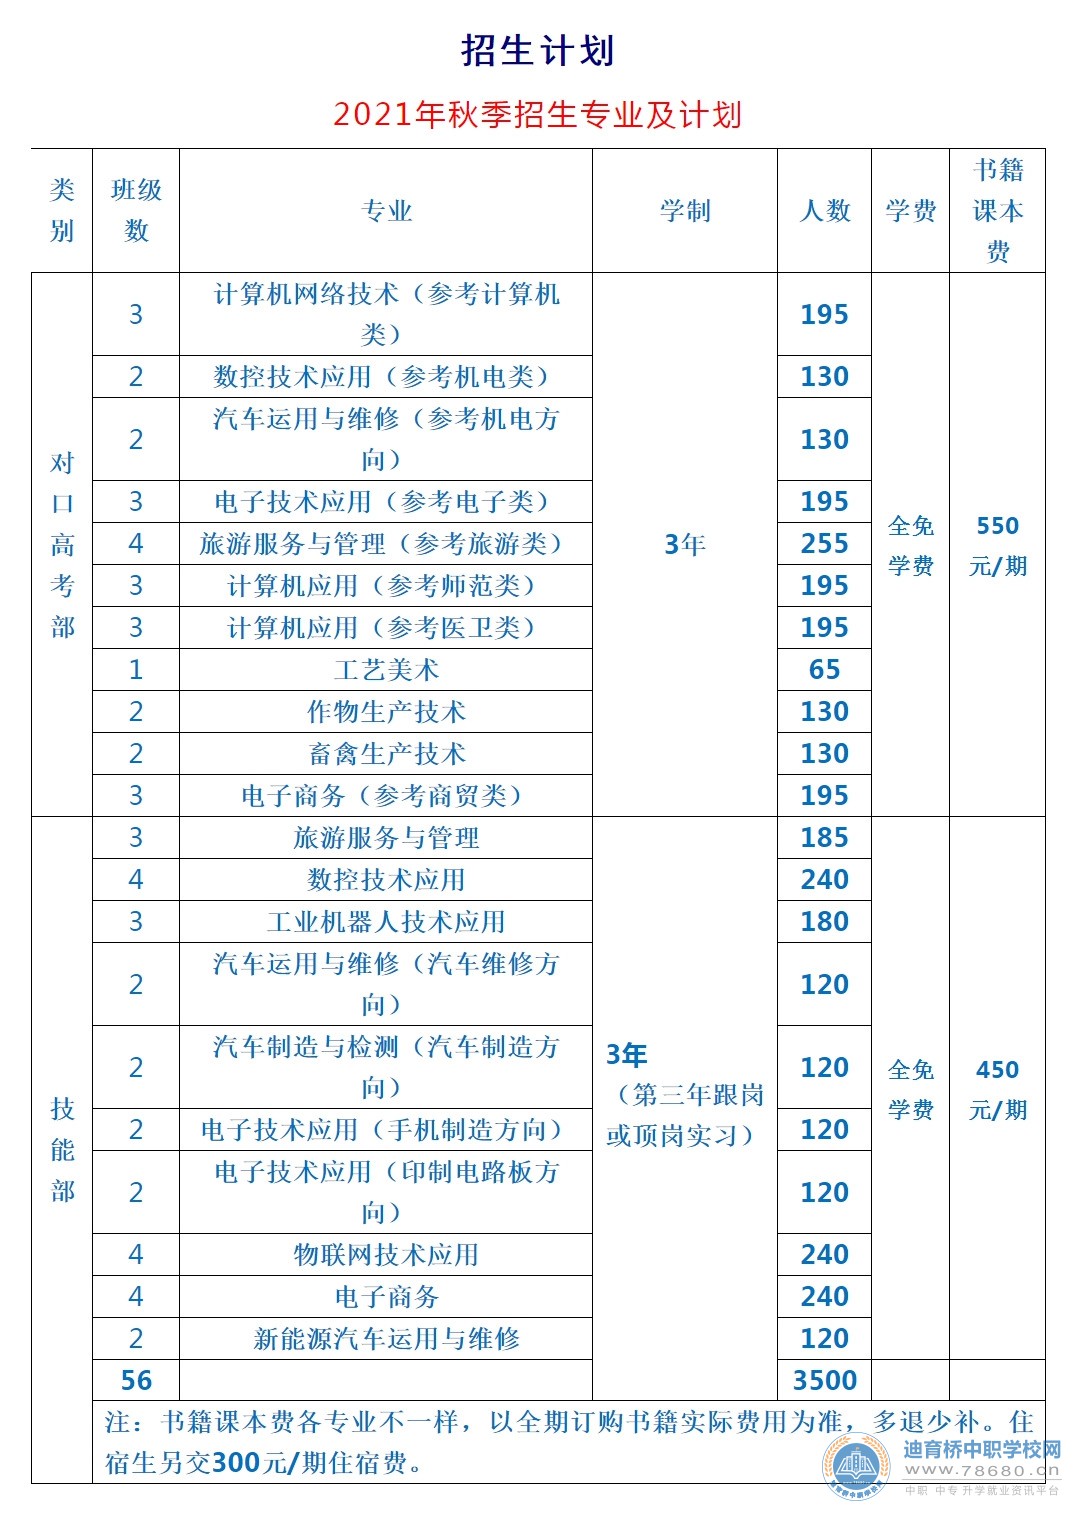 宁远县职业中专学校2021年秋季招生计划